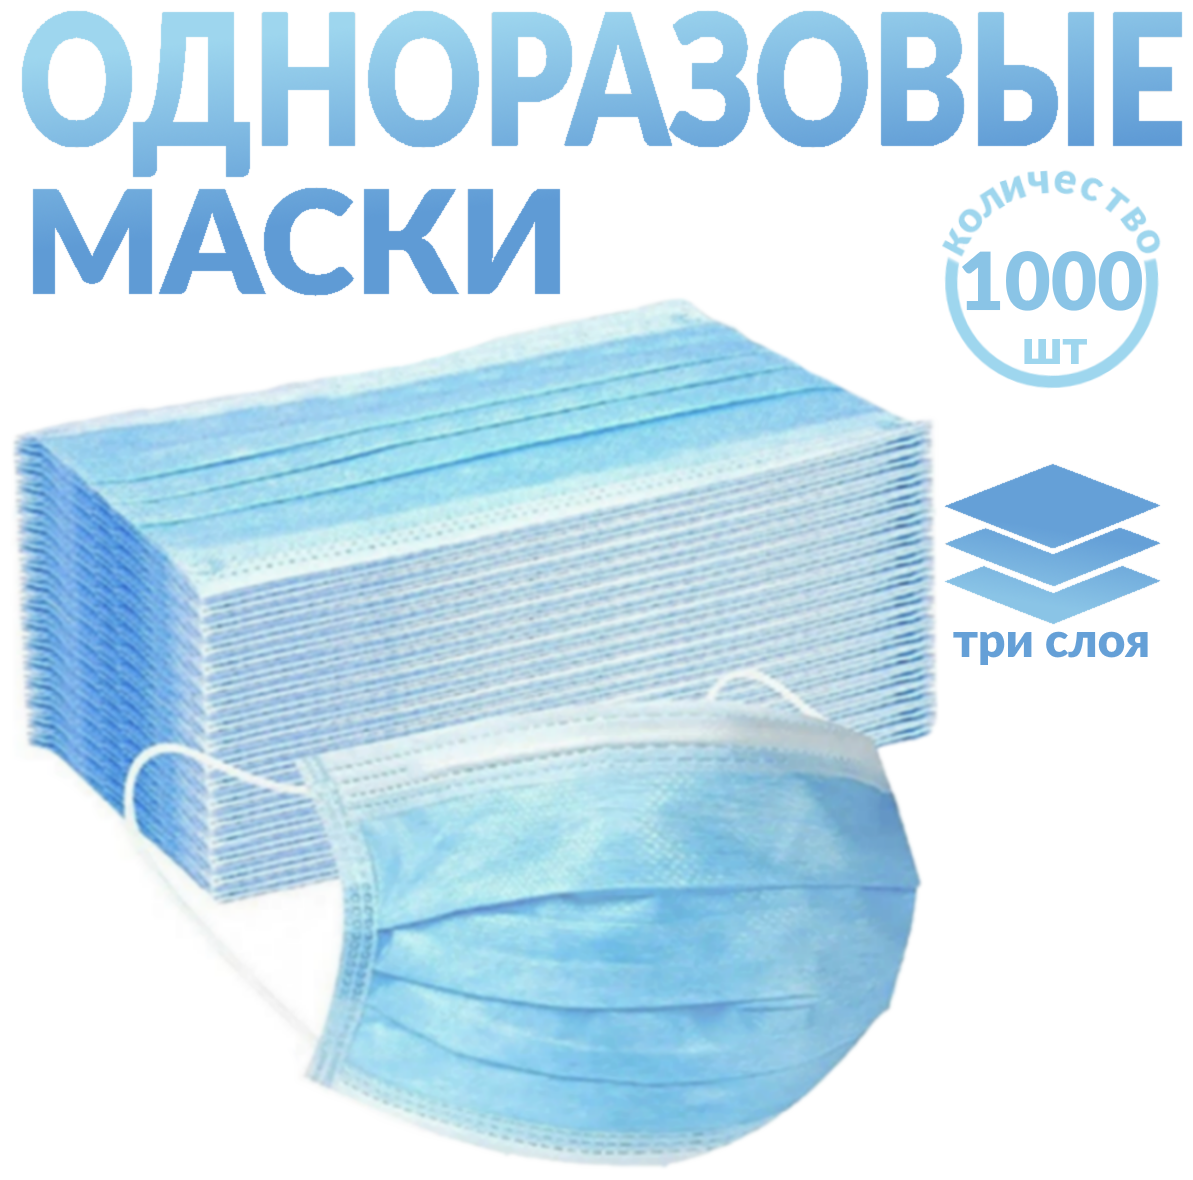 Одноразовые медицинские маски, 1000 шт., голубые (гигиенические маски трёхслойные нетканные)